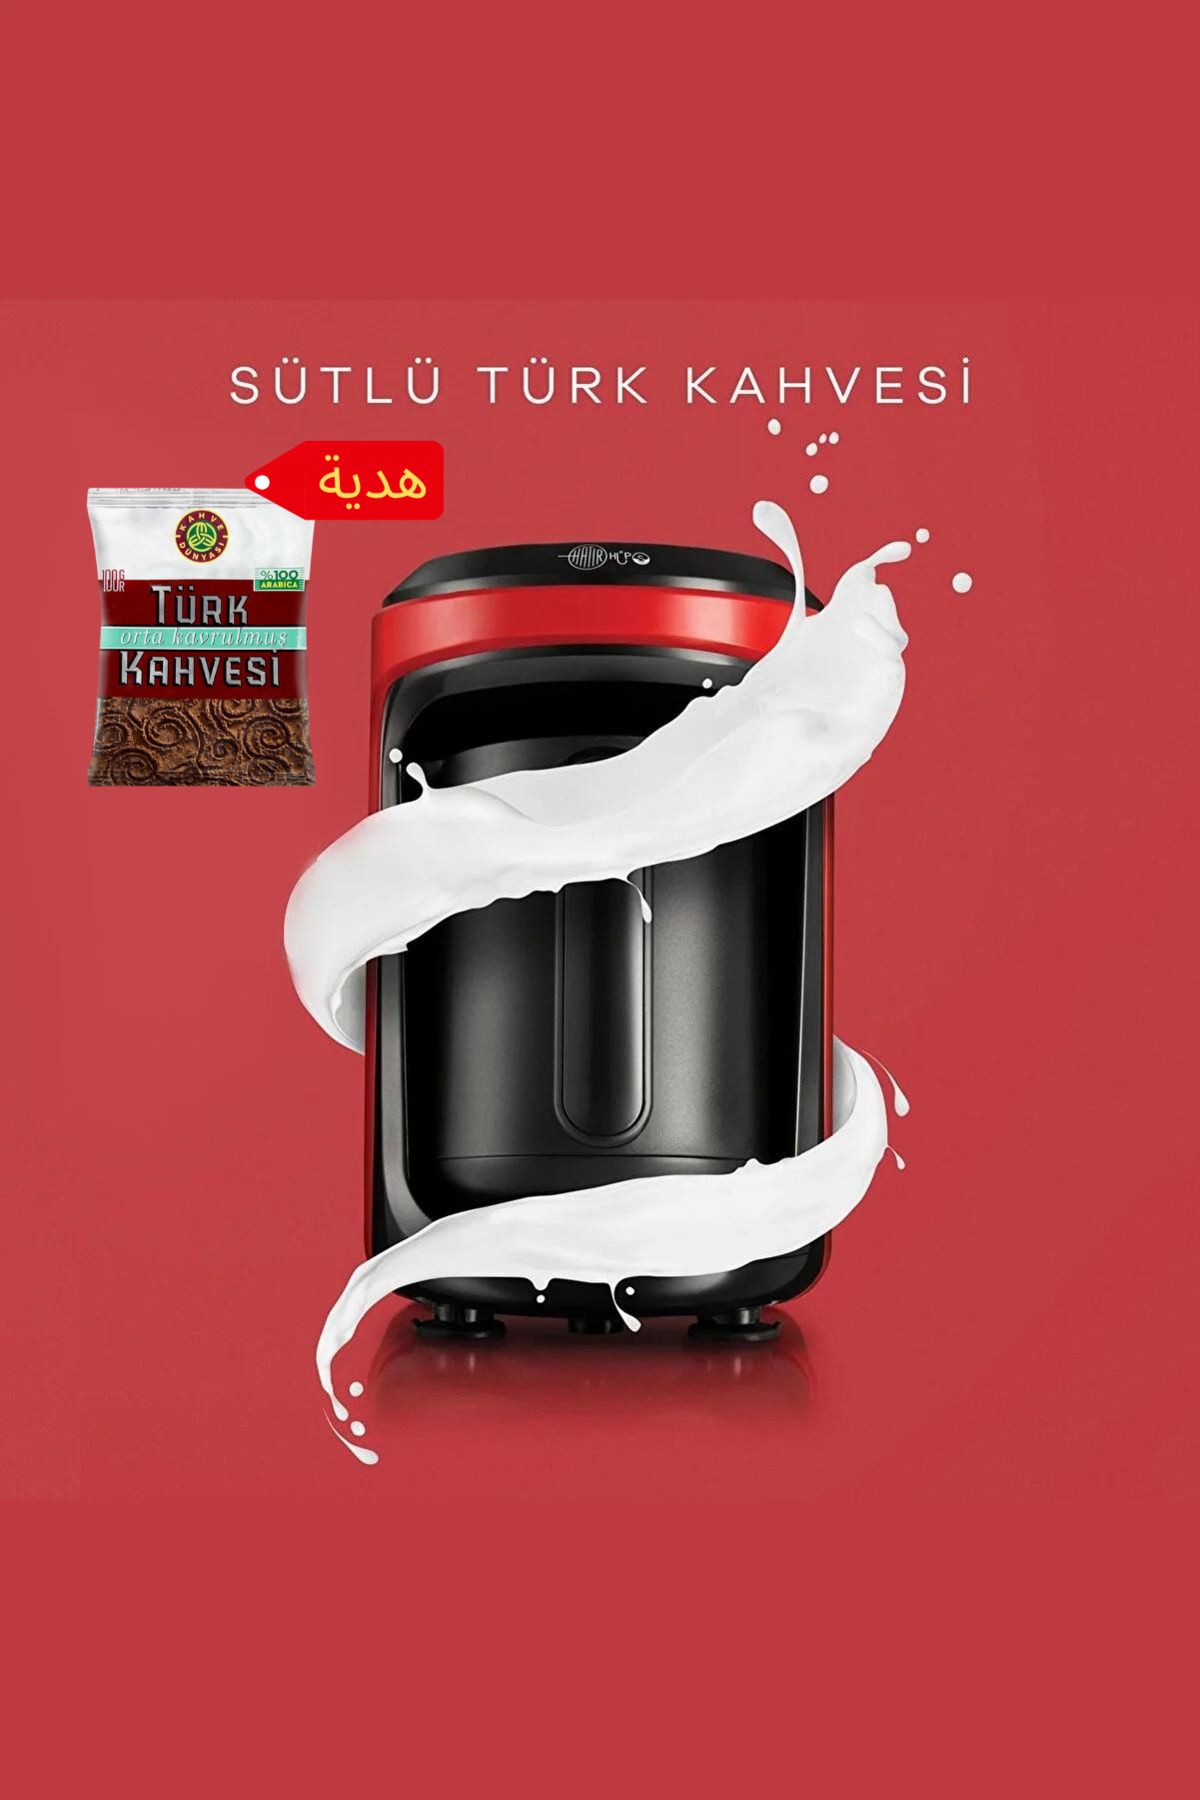 Karaca Hatır Hüps Sütlü Türk Kahve Makinesi Kırmızı Türk Kahvesi Hediyeli